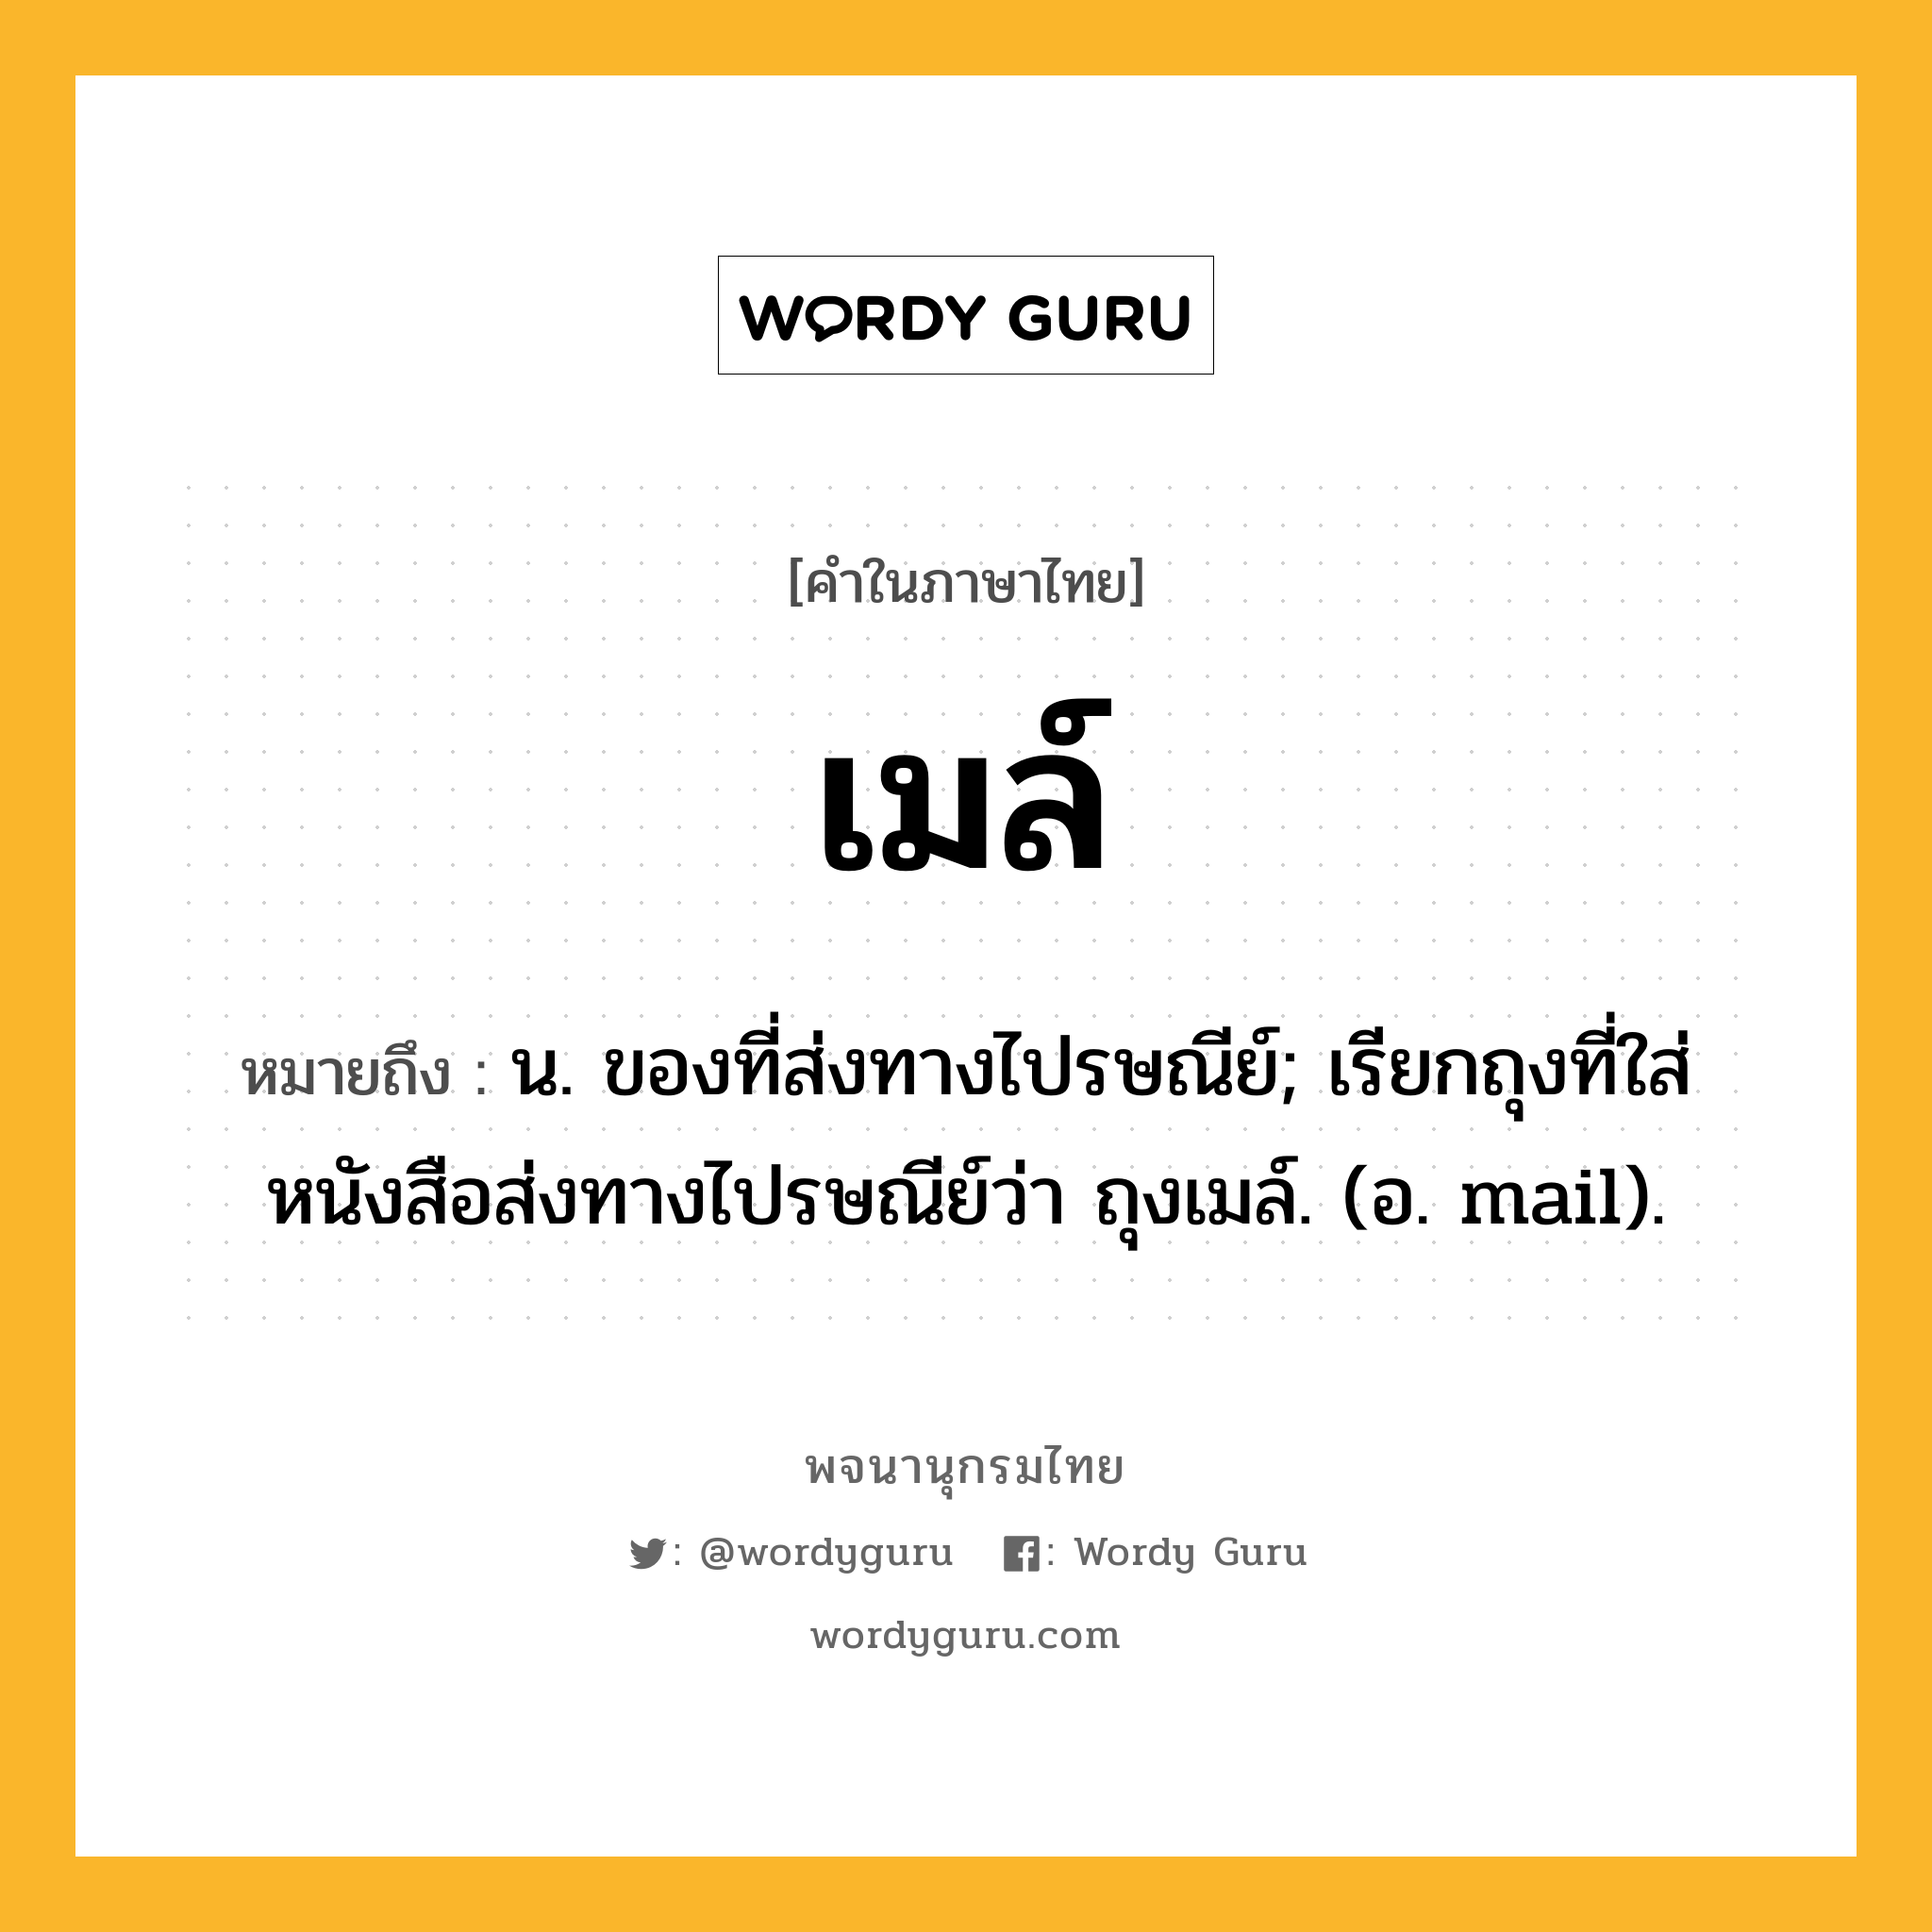 เมล์ หมายถึงอะไร?, คำในภาษาไทย เมล์ หมายถึง น. ของที่ส่งทางไปรษณีย์; เรียกถุงที่ใส่หนังสือส่งทางไปรษณีย์ว่า ถุงเมล์. (อ. mail).